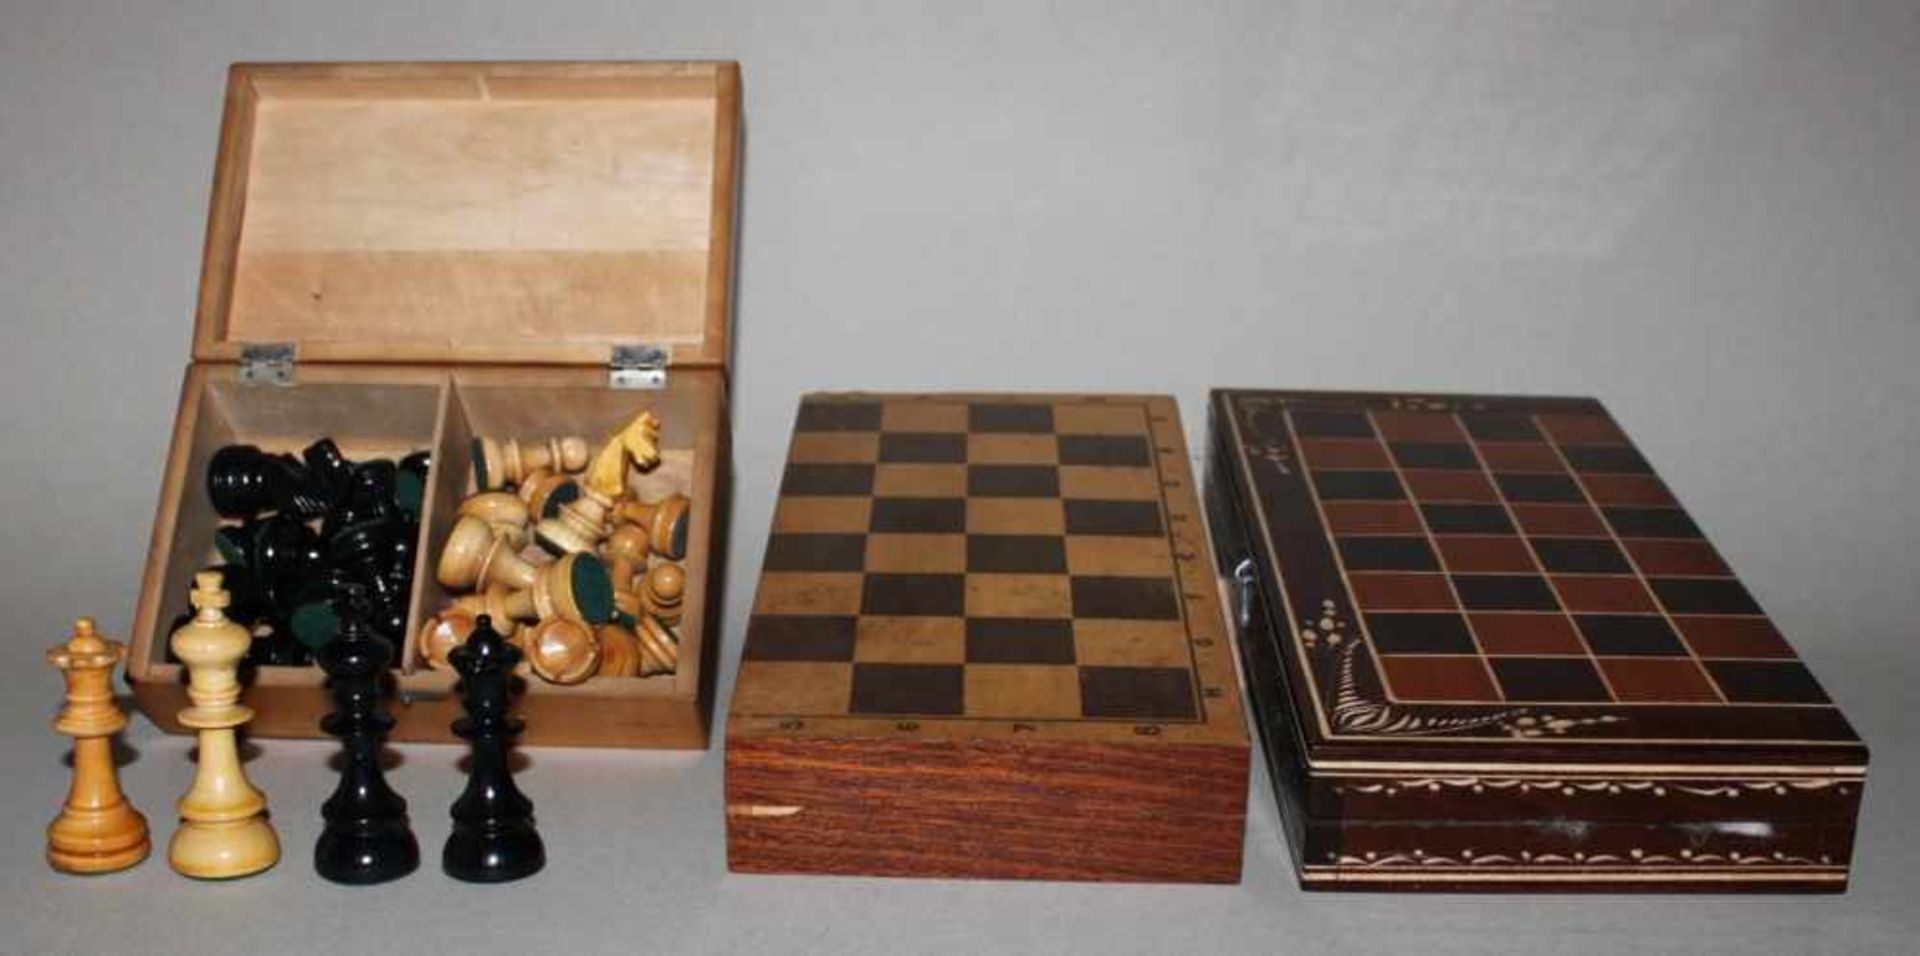 Europa. 3 Schachfigurensätze aus Holz,davon 2 im Spielkasten aus Holz. Eine Partei jeweils